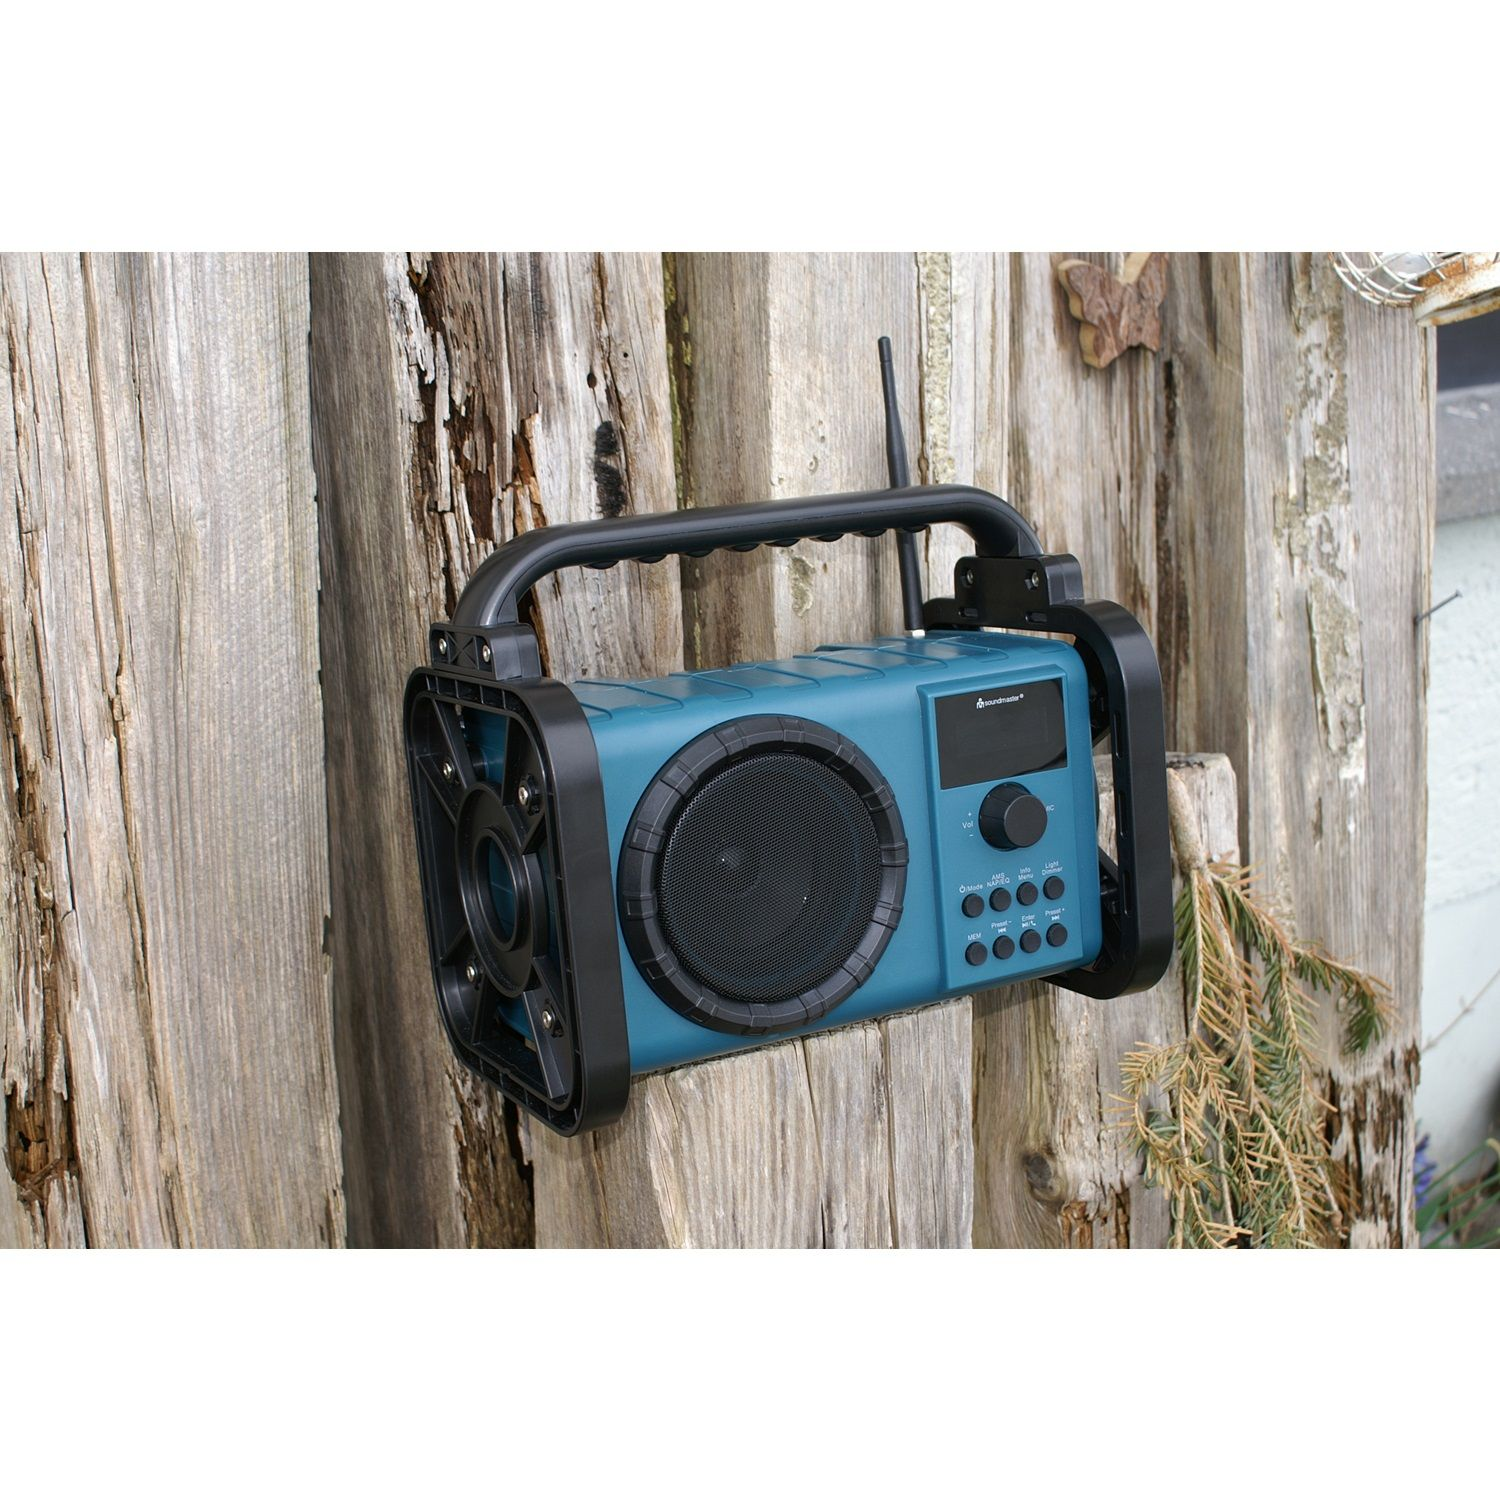 SOUNDMASTER DAB80 Multifunktionsradio, DAB, DAB+, FM, DAB+, Bluetooth, FM, blau AM